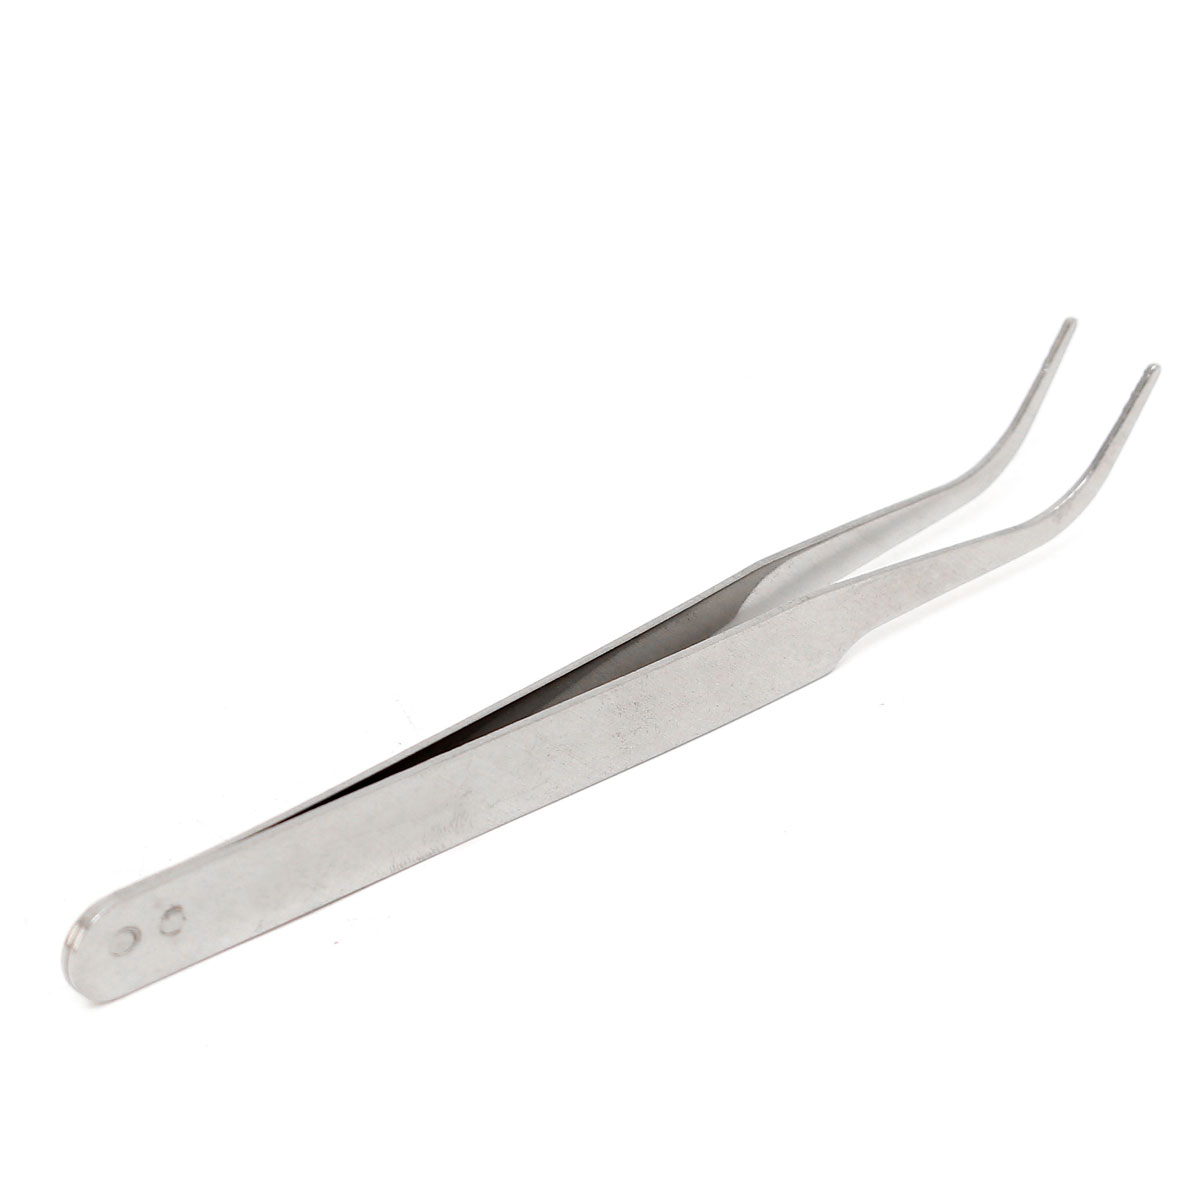 100mm-Stainless-Steel-High-Precision-Elbow-Tweezers-DIY-Tool-1096797-1